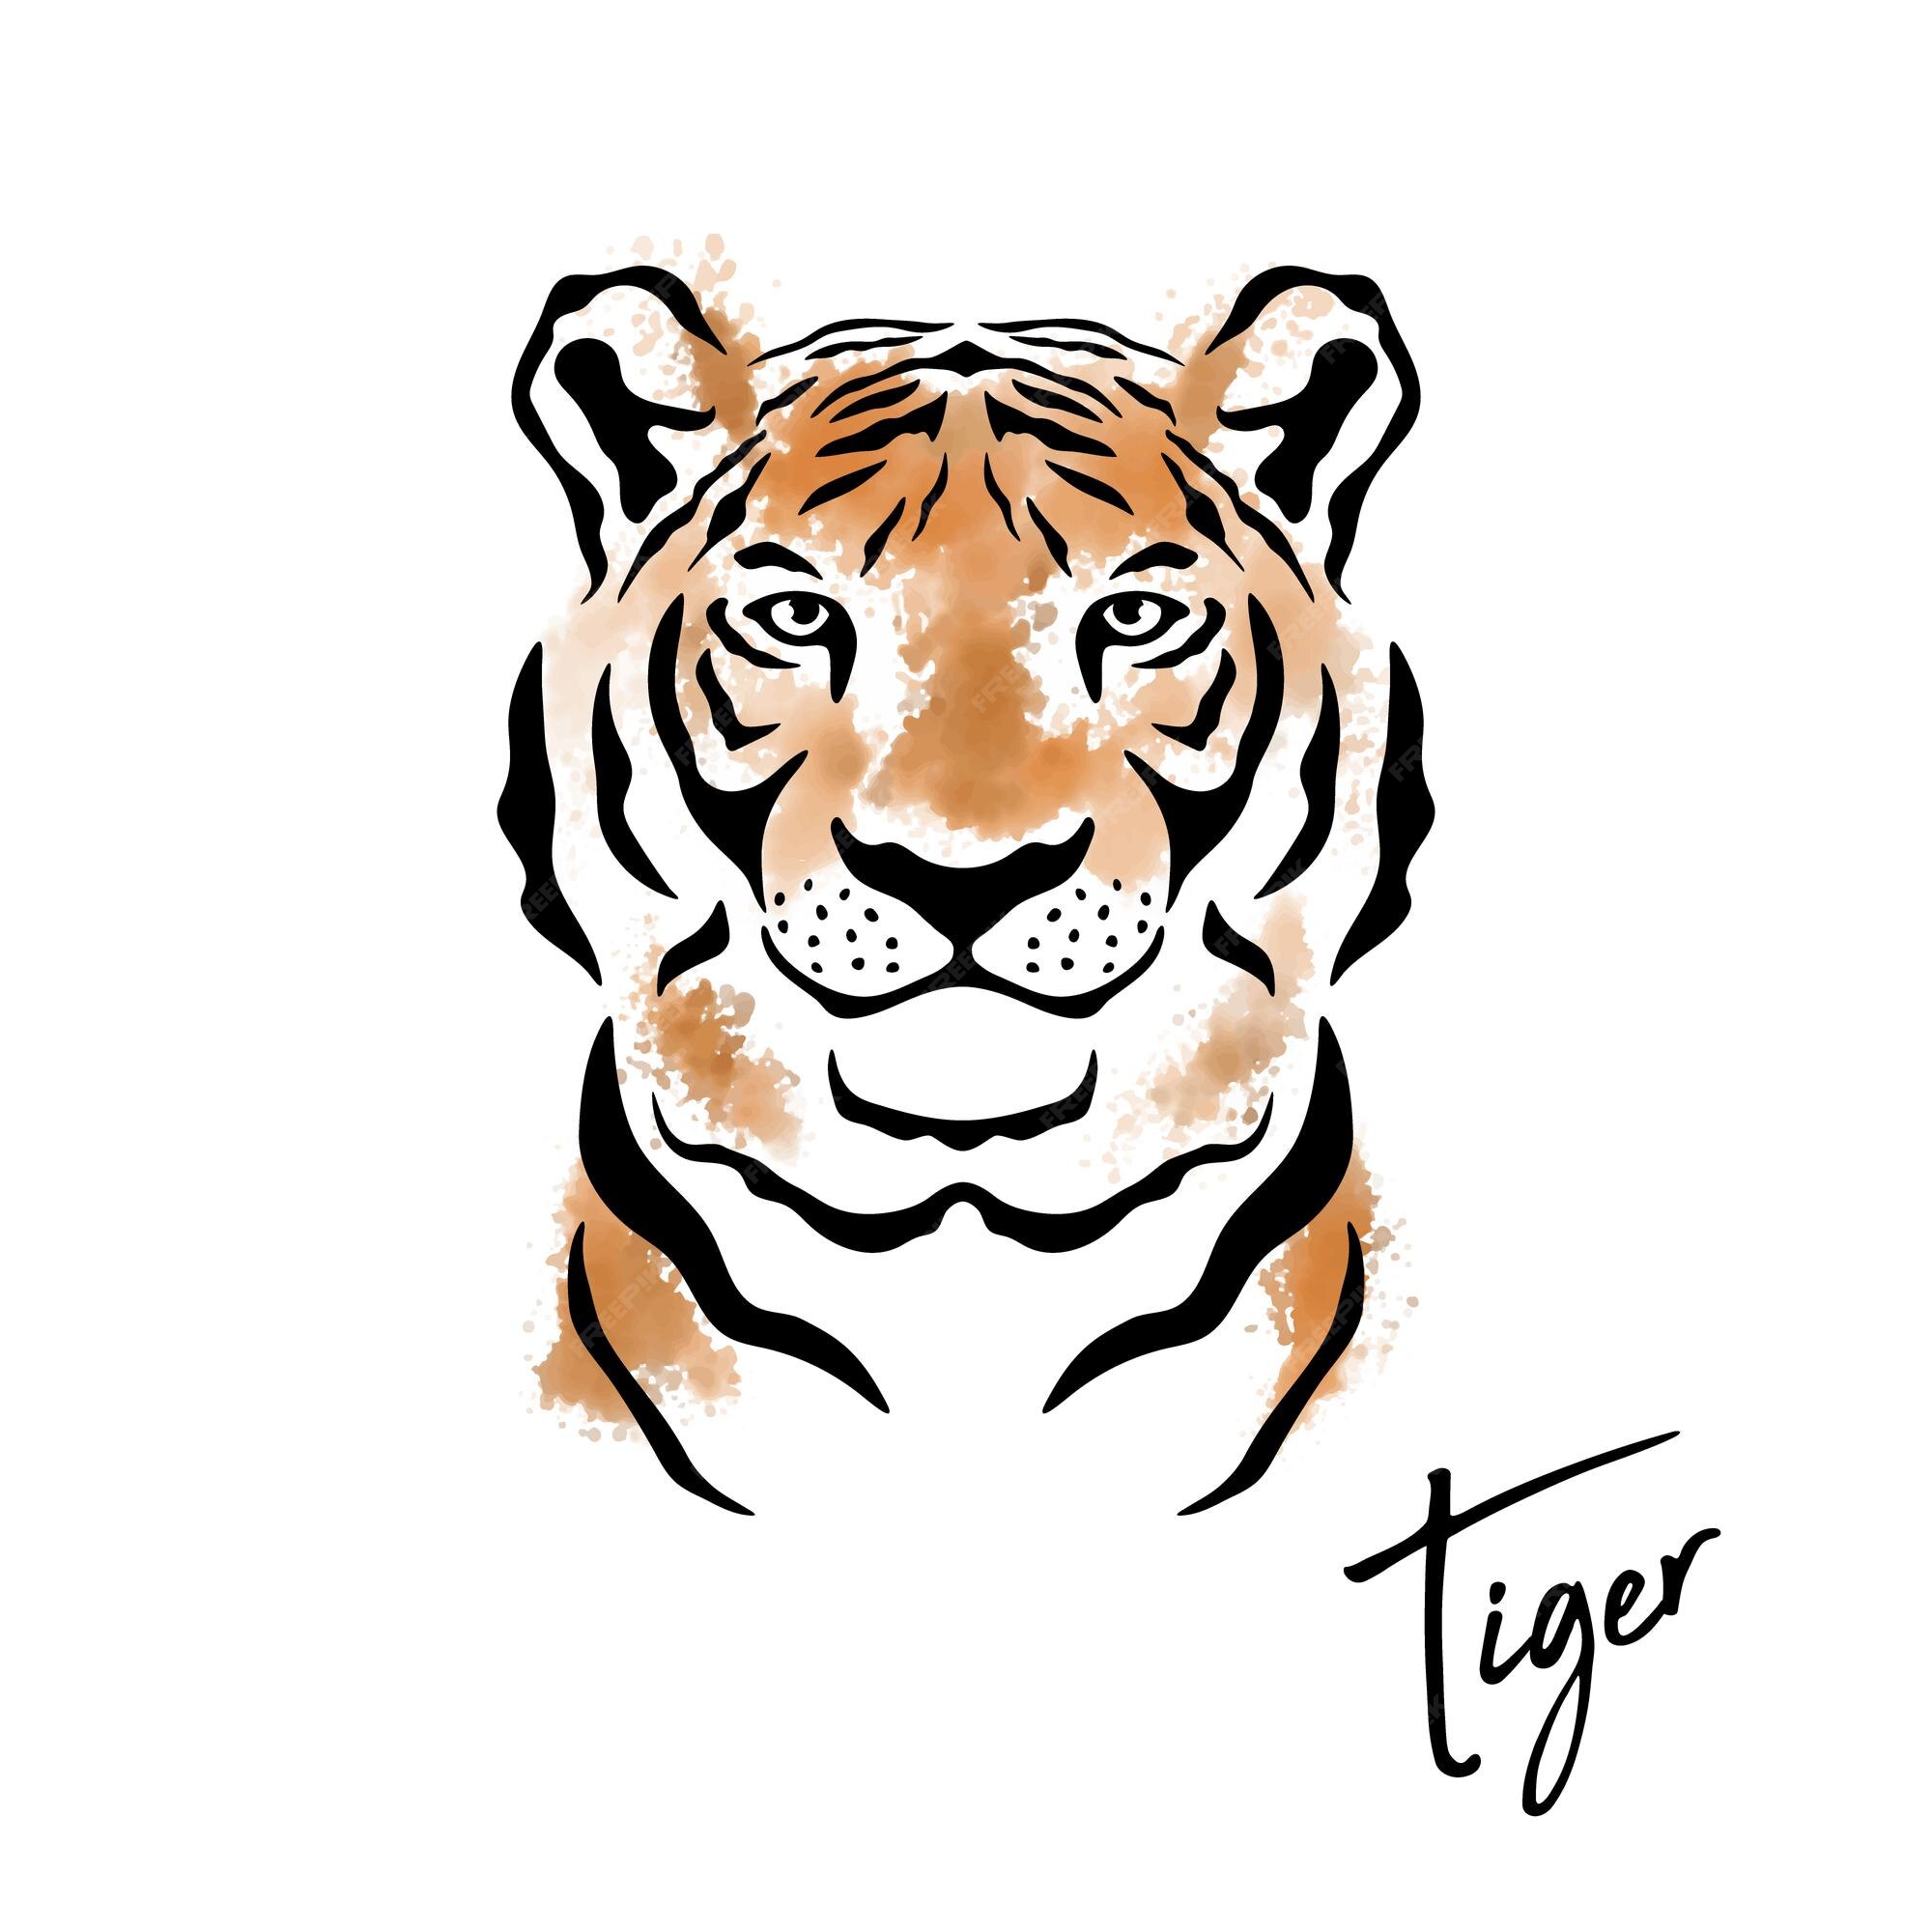 feliz año nuevo chino 2022. cabeza de tigre simbólico en 2022 año del  calendario lunar del tigre. 2909139 Vector en Vecteezy